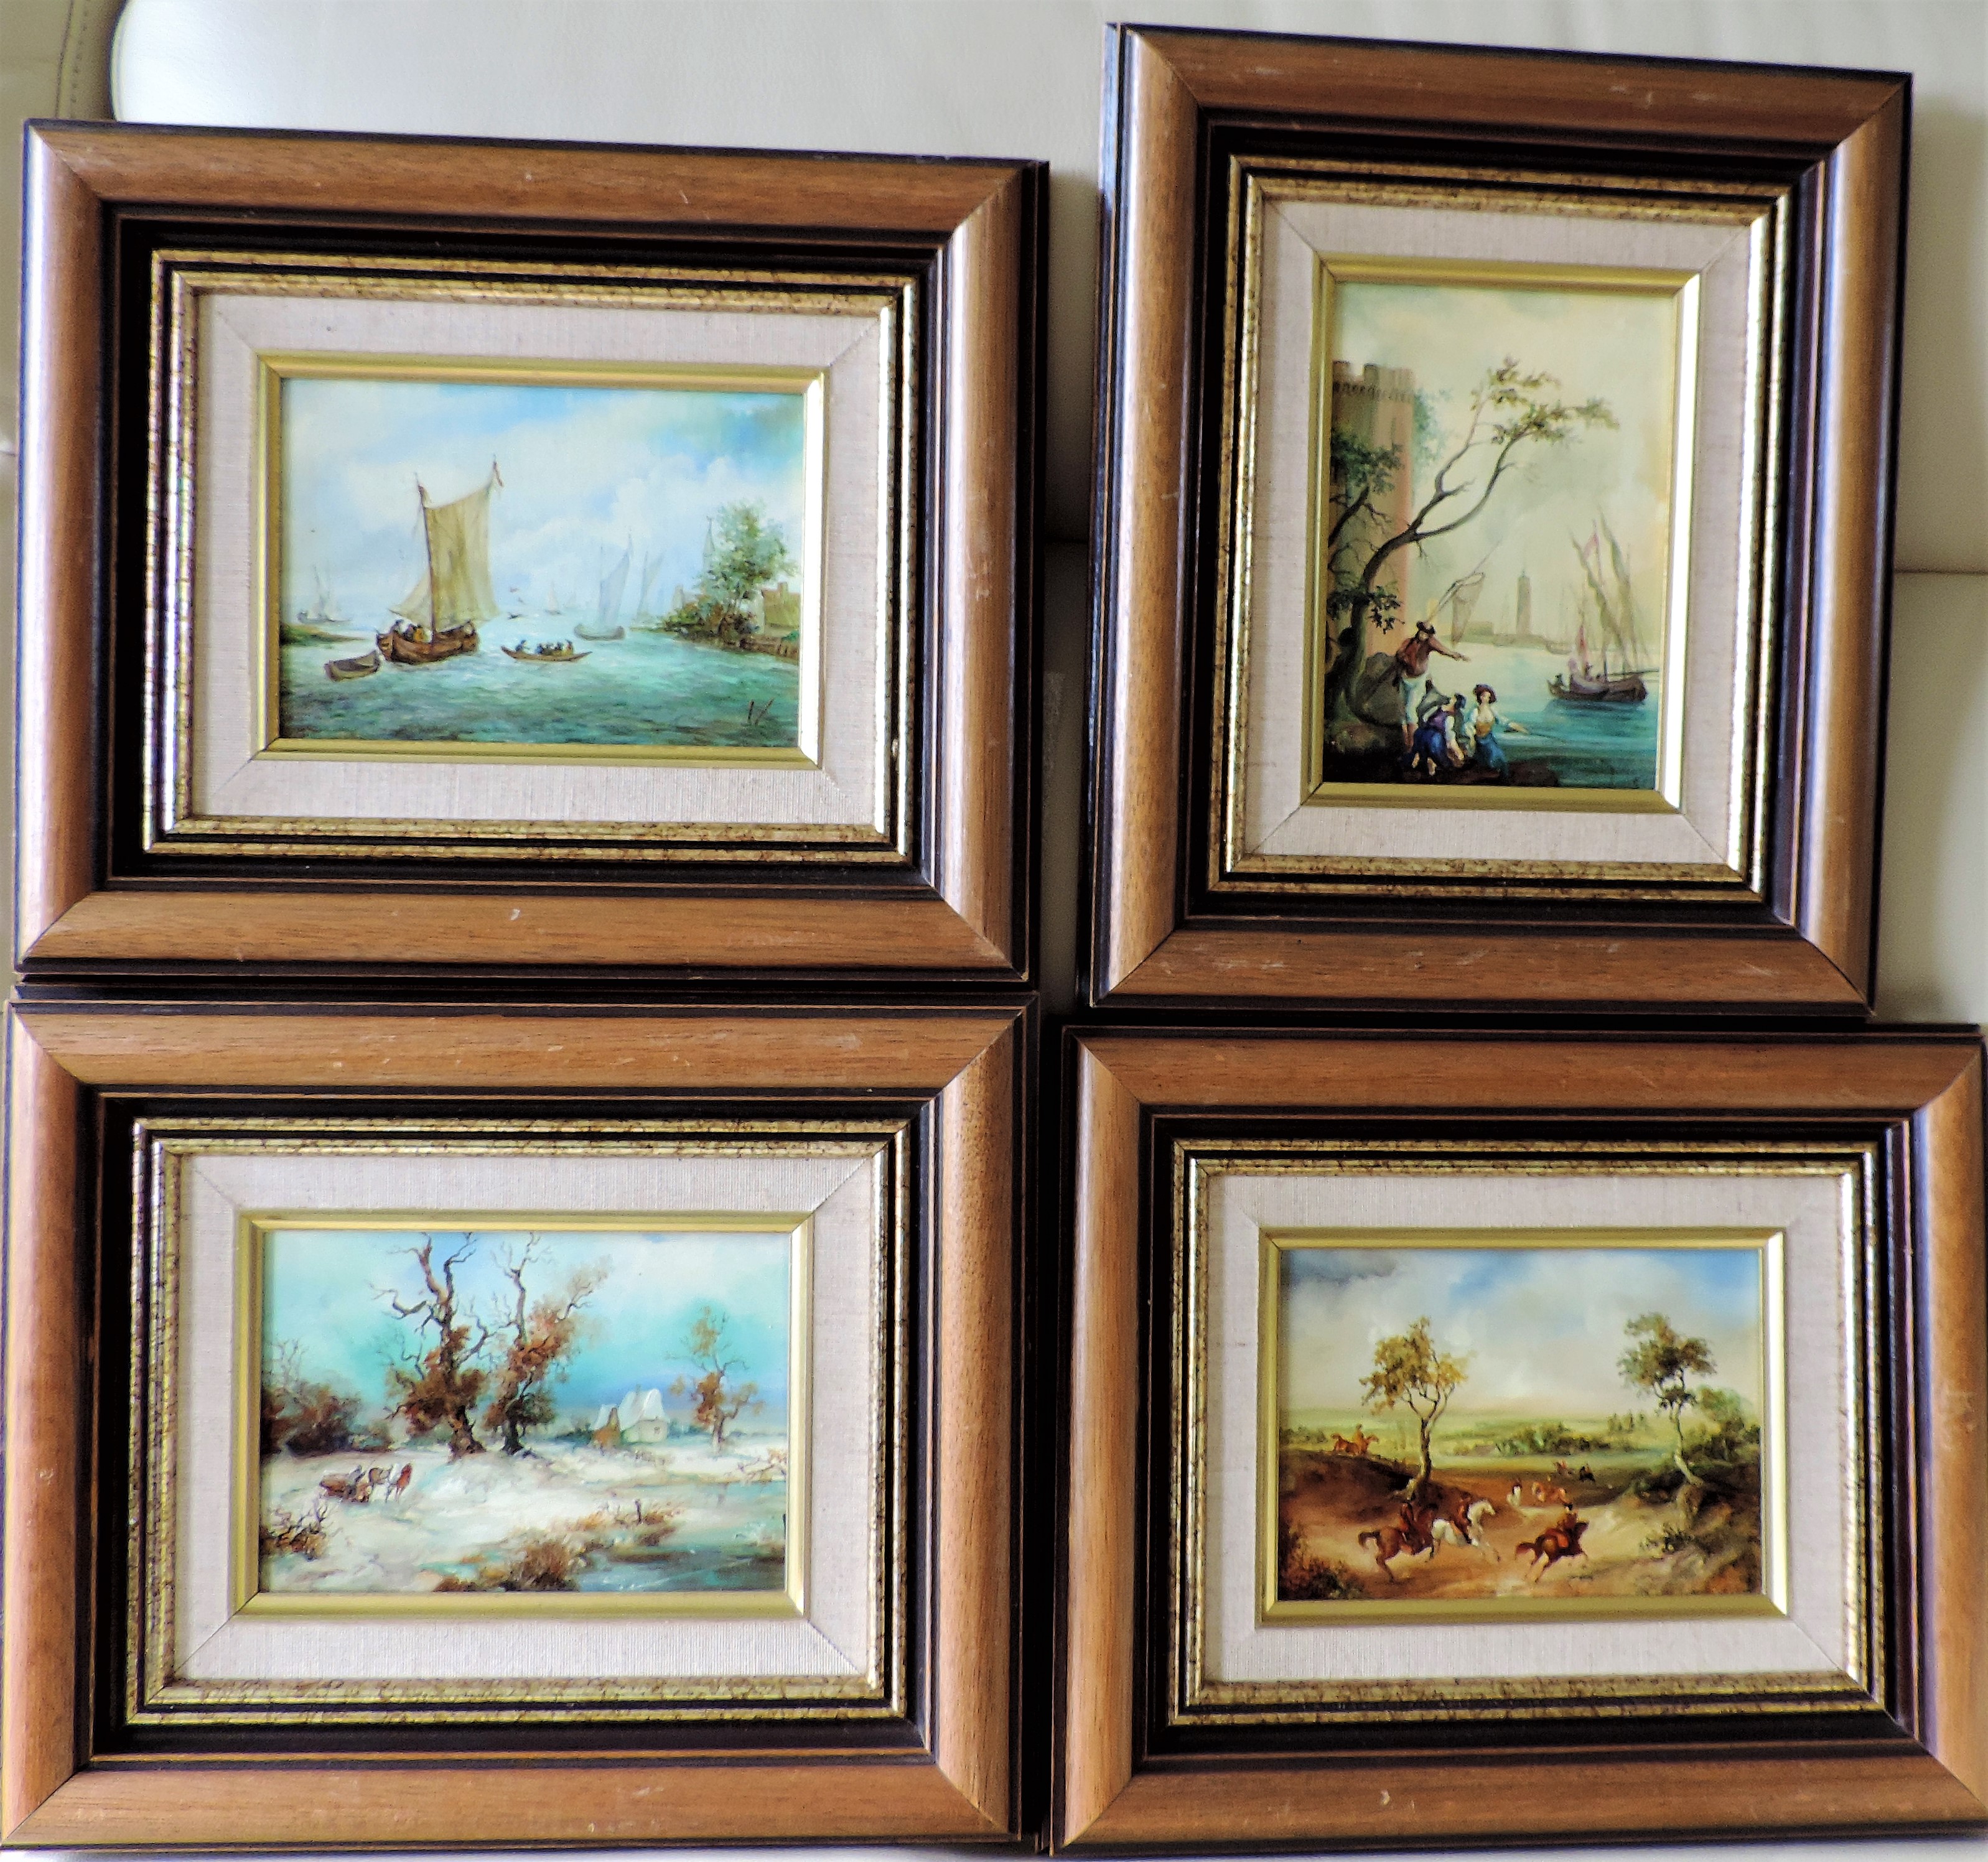 A Set of Four Framed Oils on Board, Frame Size 32 x 27cm - Image 4 of 6